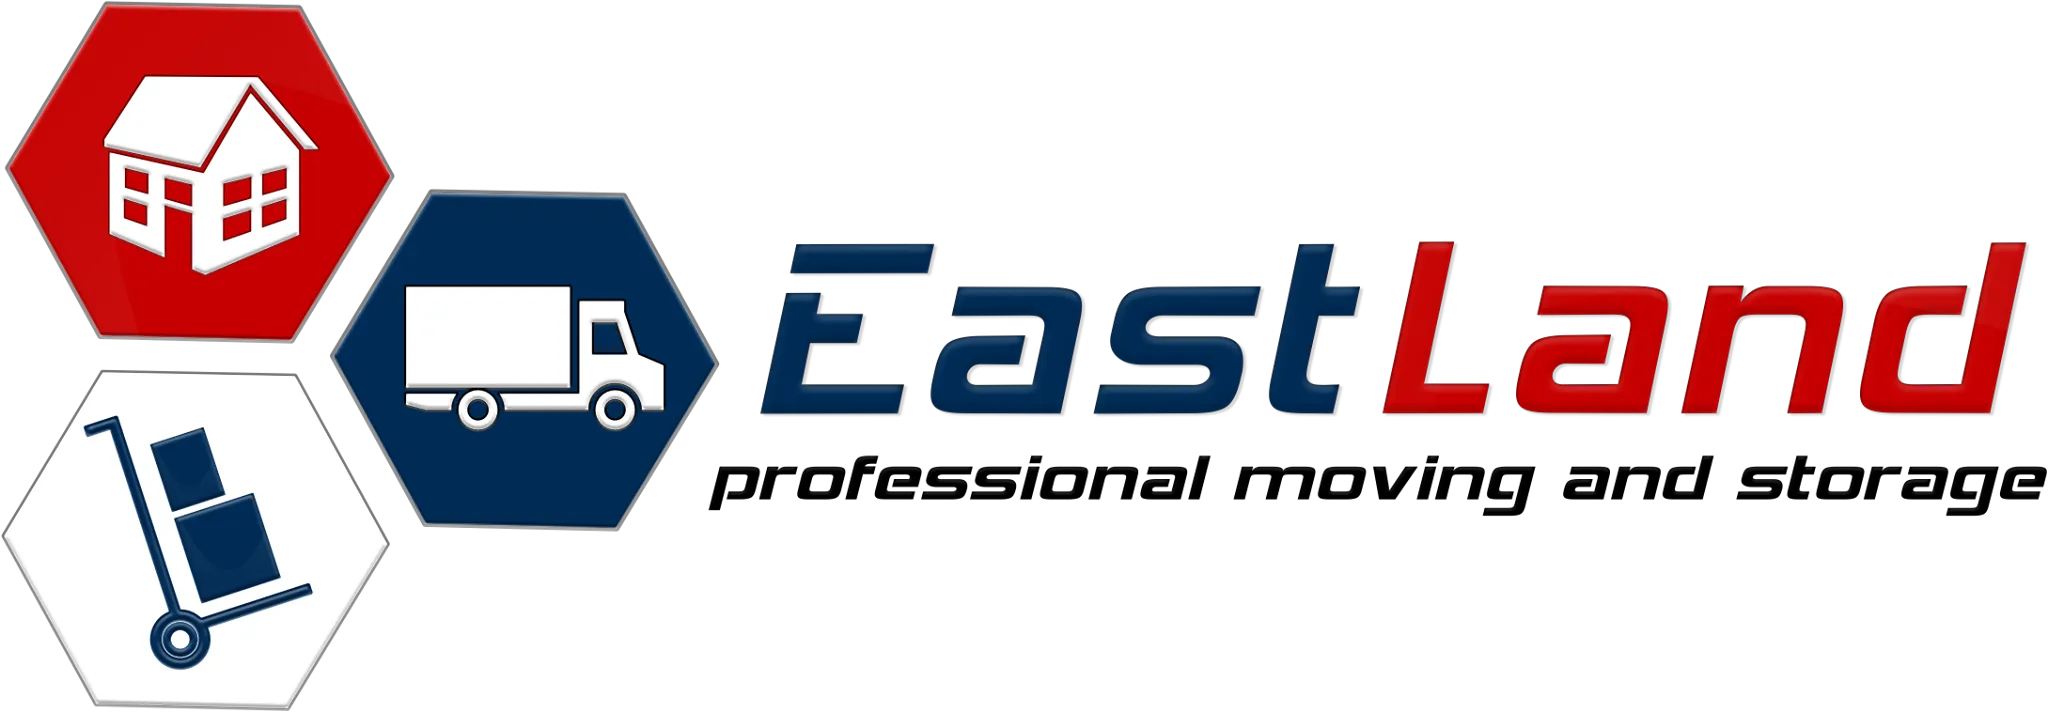 Eastland Movers logo